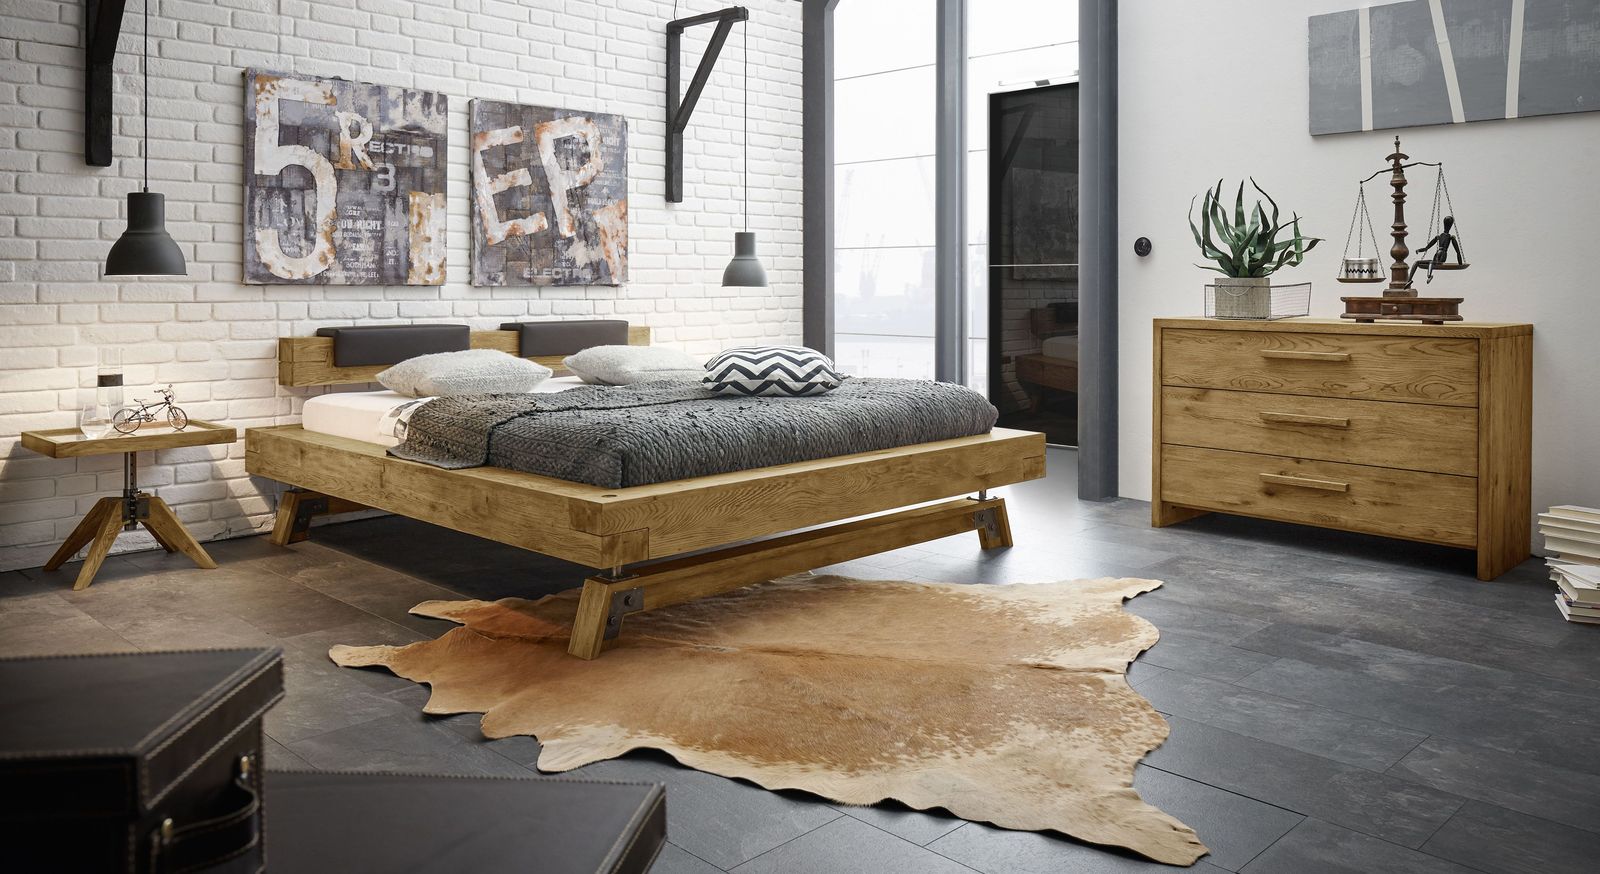 Betten & Möbel BETTEN.de Stilwelt Industrial Fabrik-Charme mit ᐅ